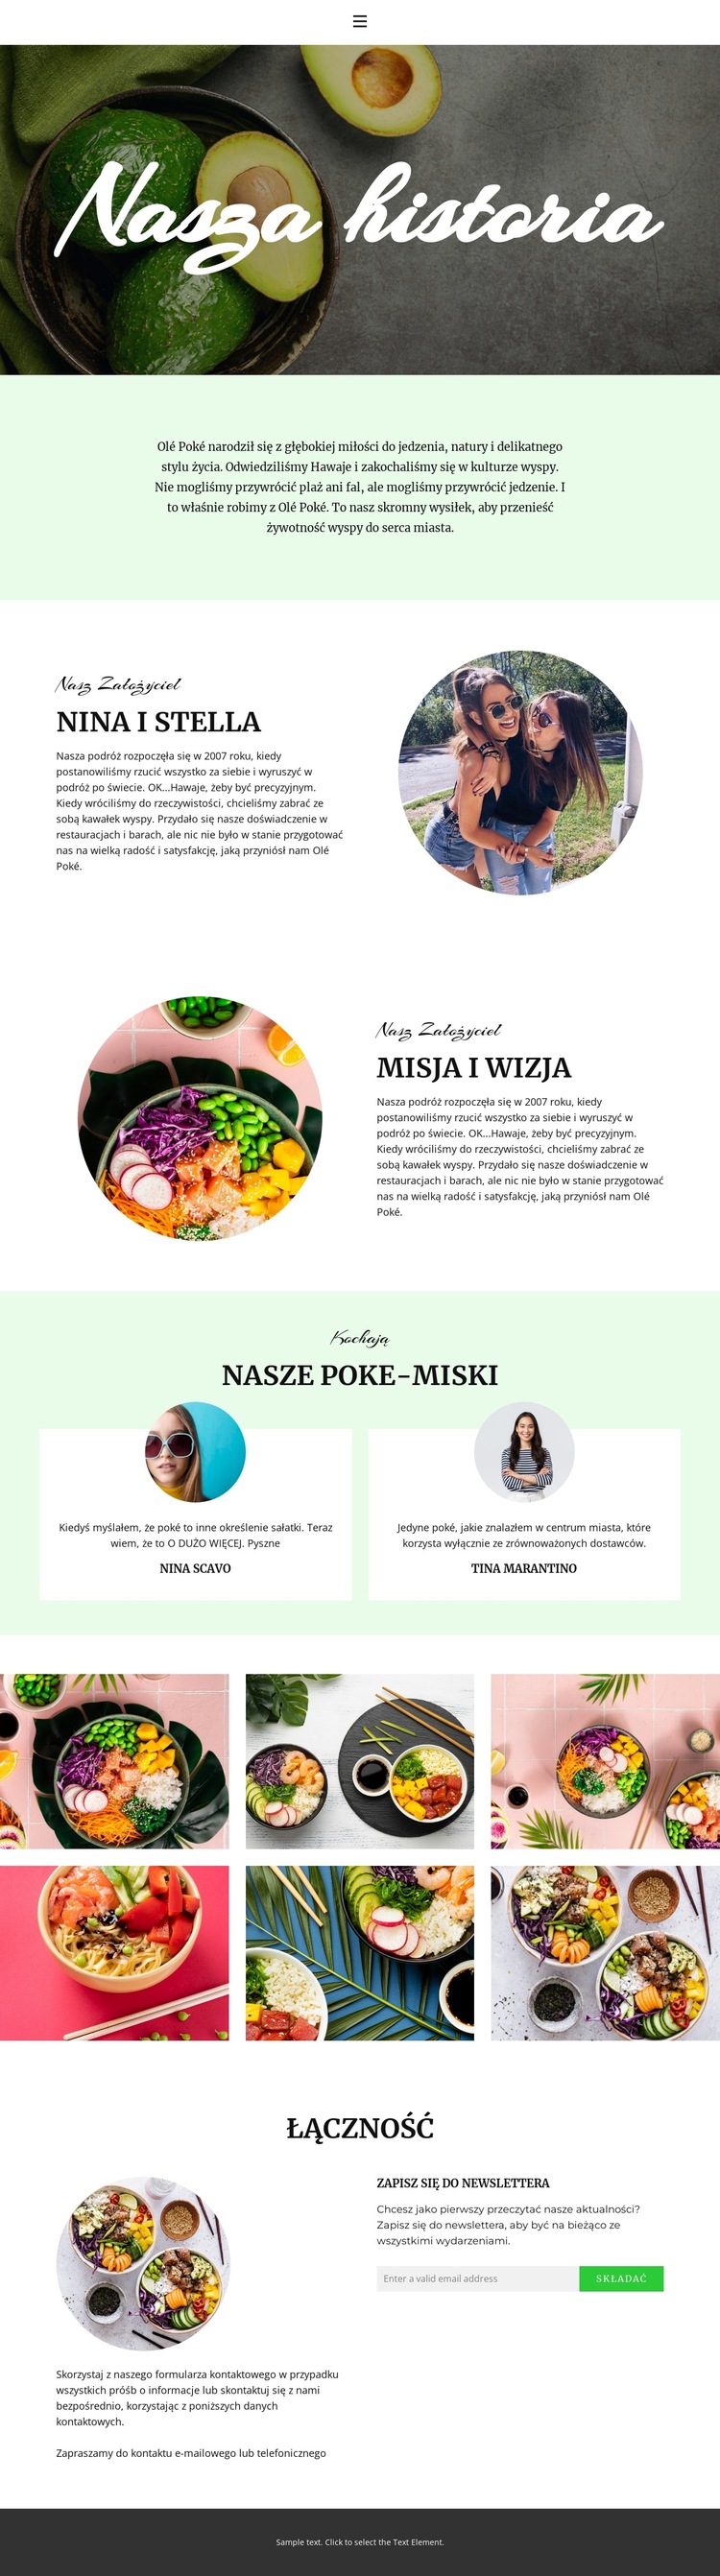 About our founder Szablon witryny sieci Web